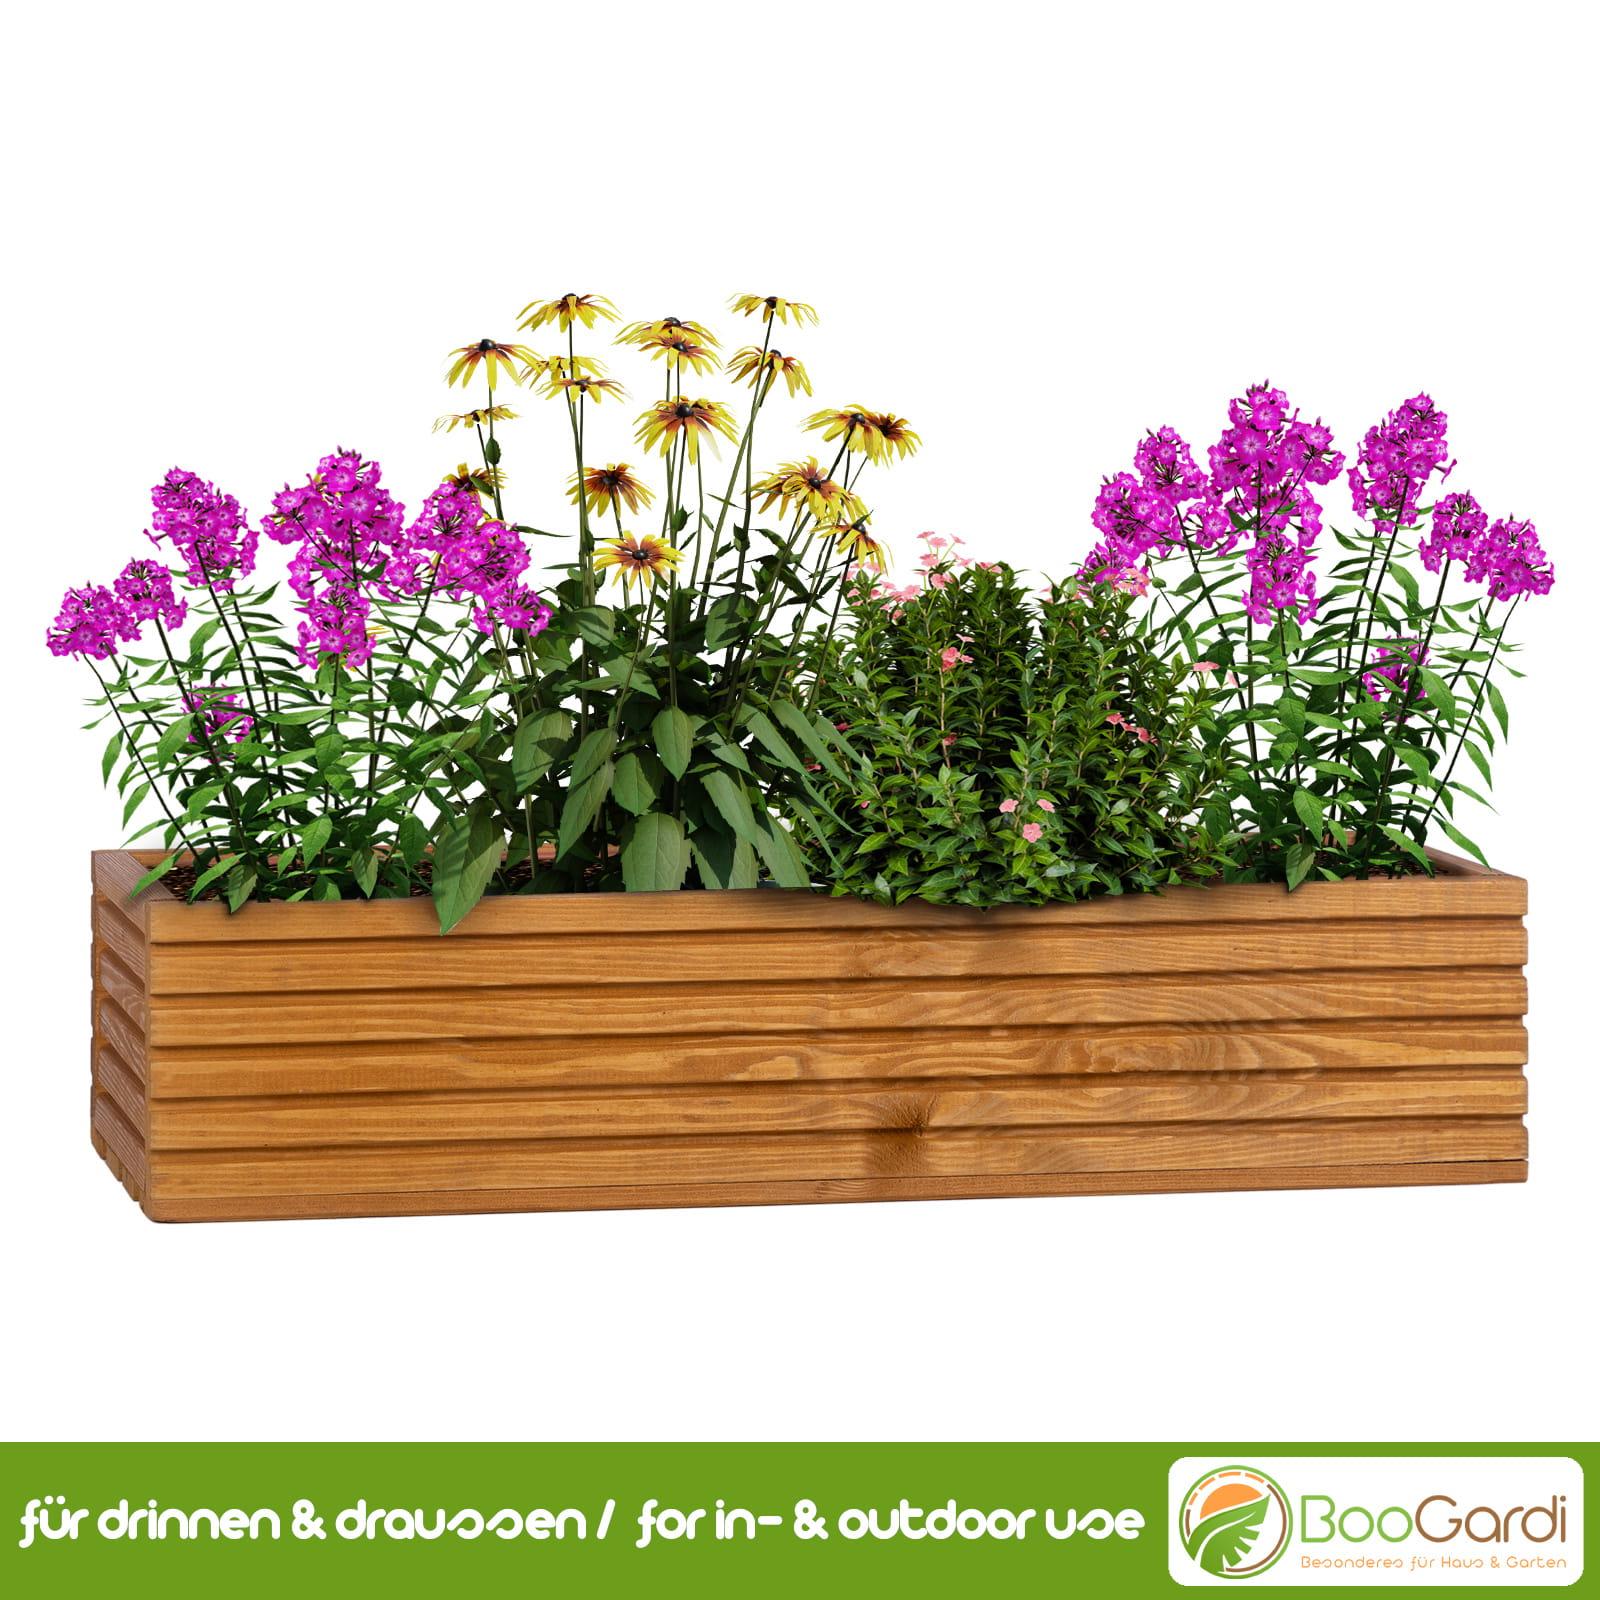 Blumenkasten mit Kunststoffeinsatz Haus Garten | & - BooGardi